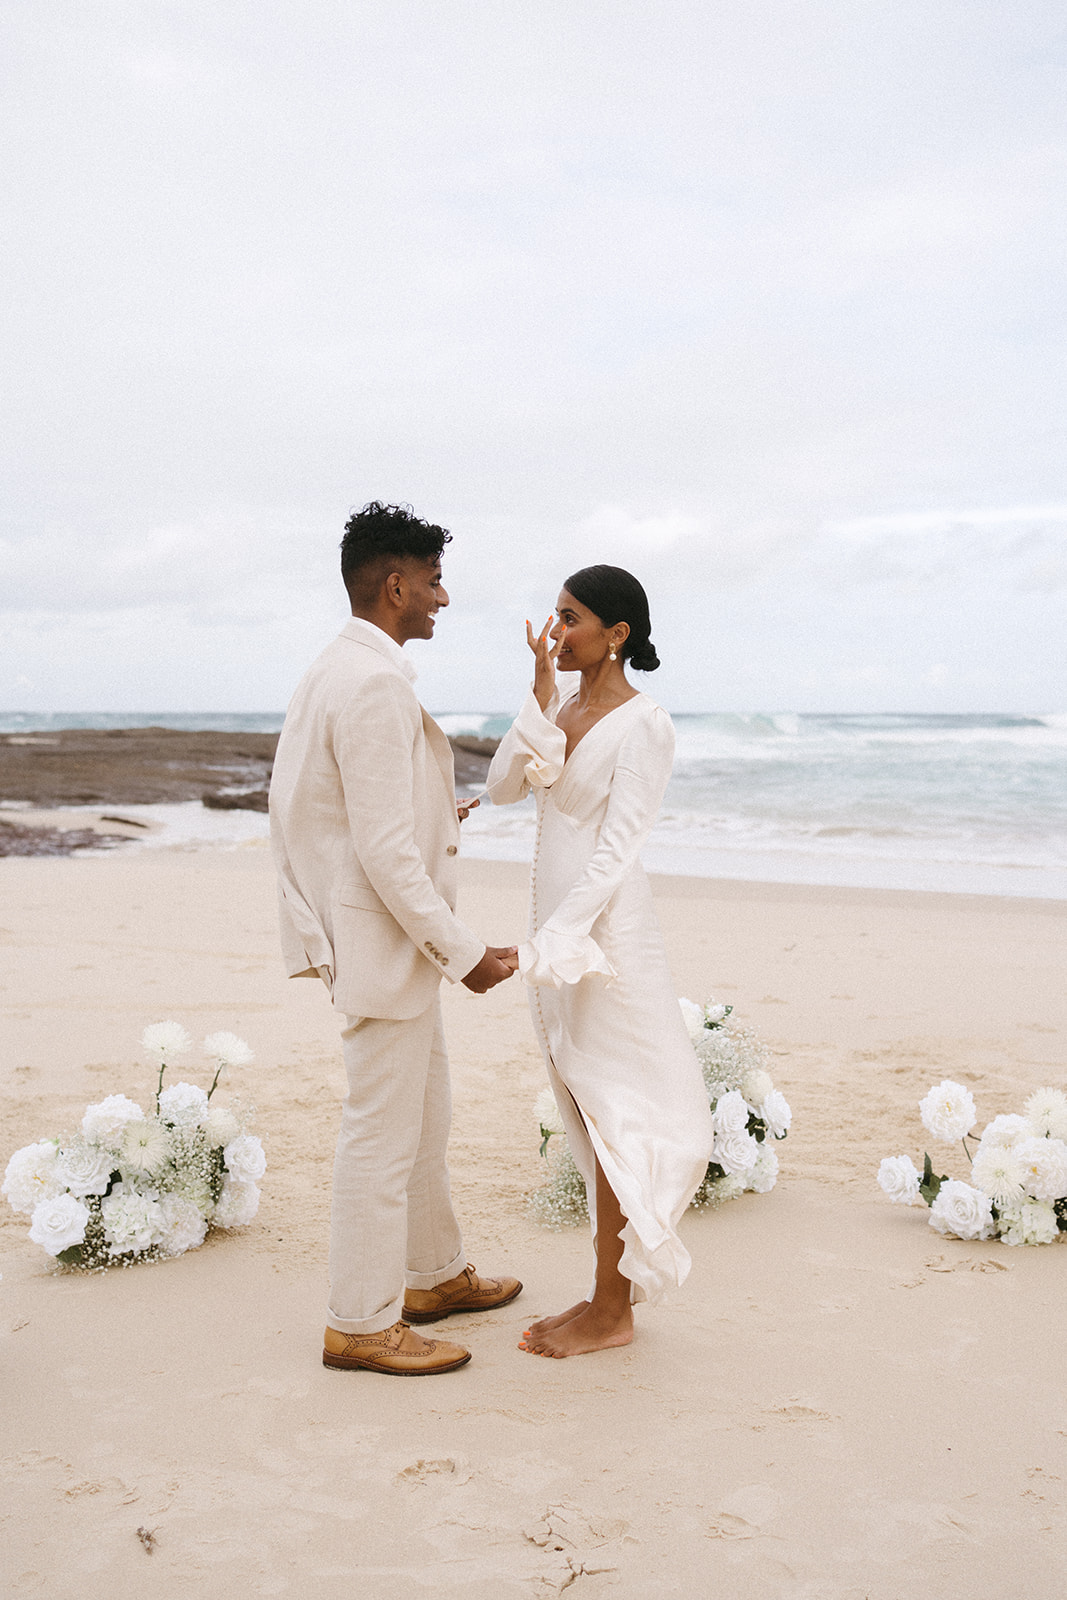 Artful wedding photography | Shona Joy wedding dress | Elegant elopement | Claire Coulthard |Wedding Photography